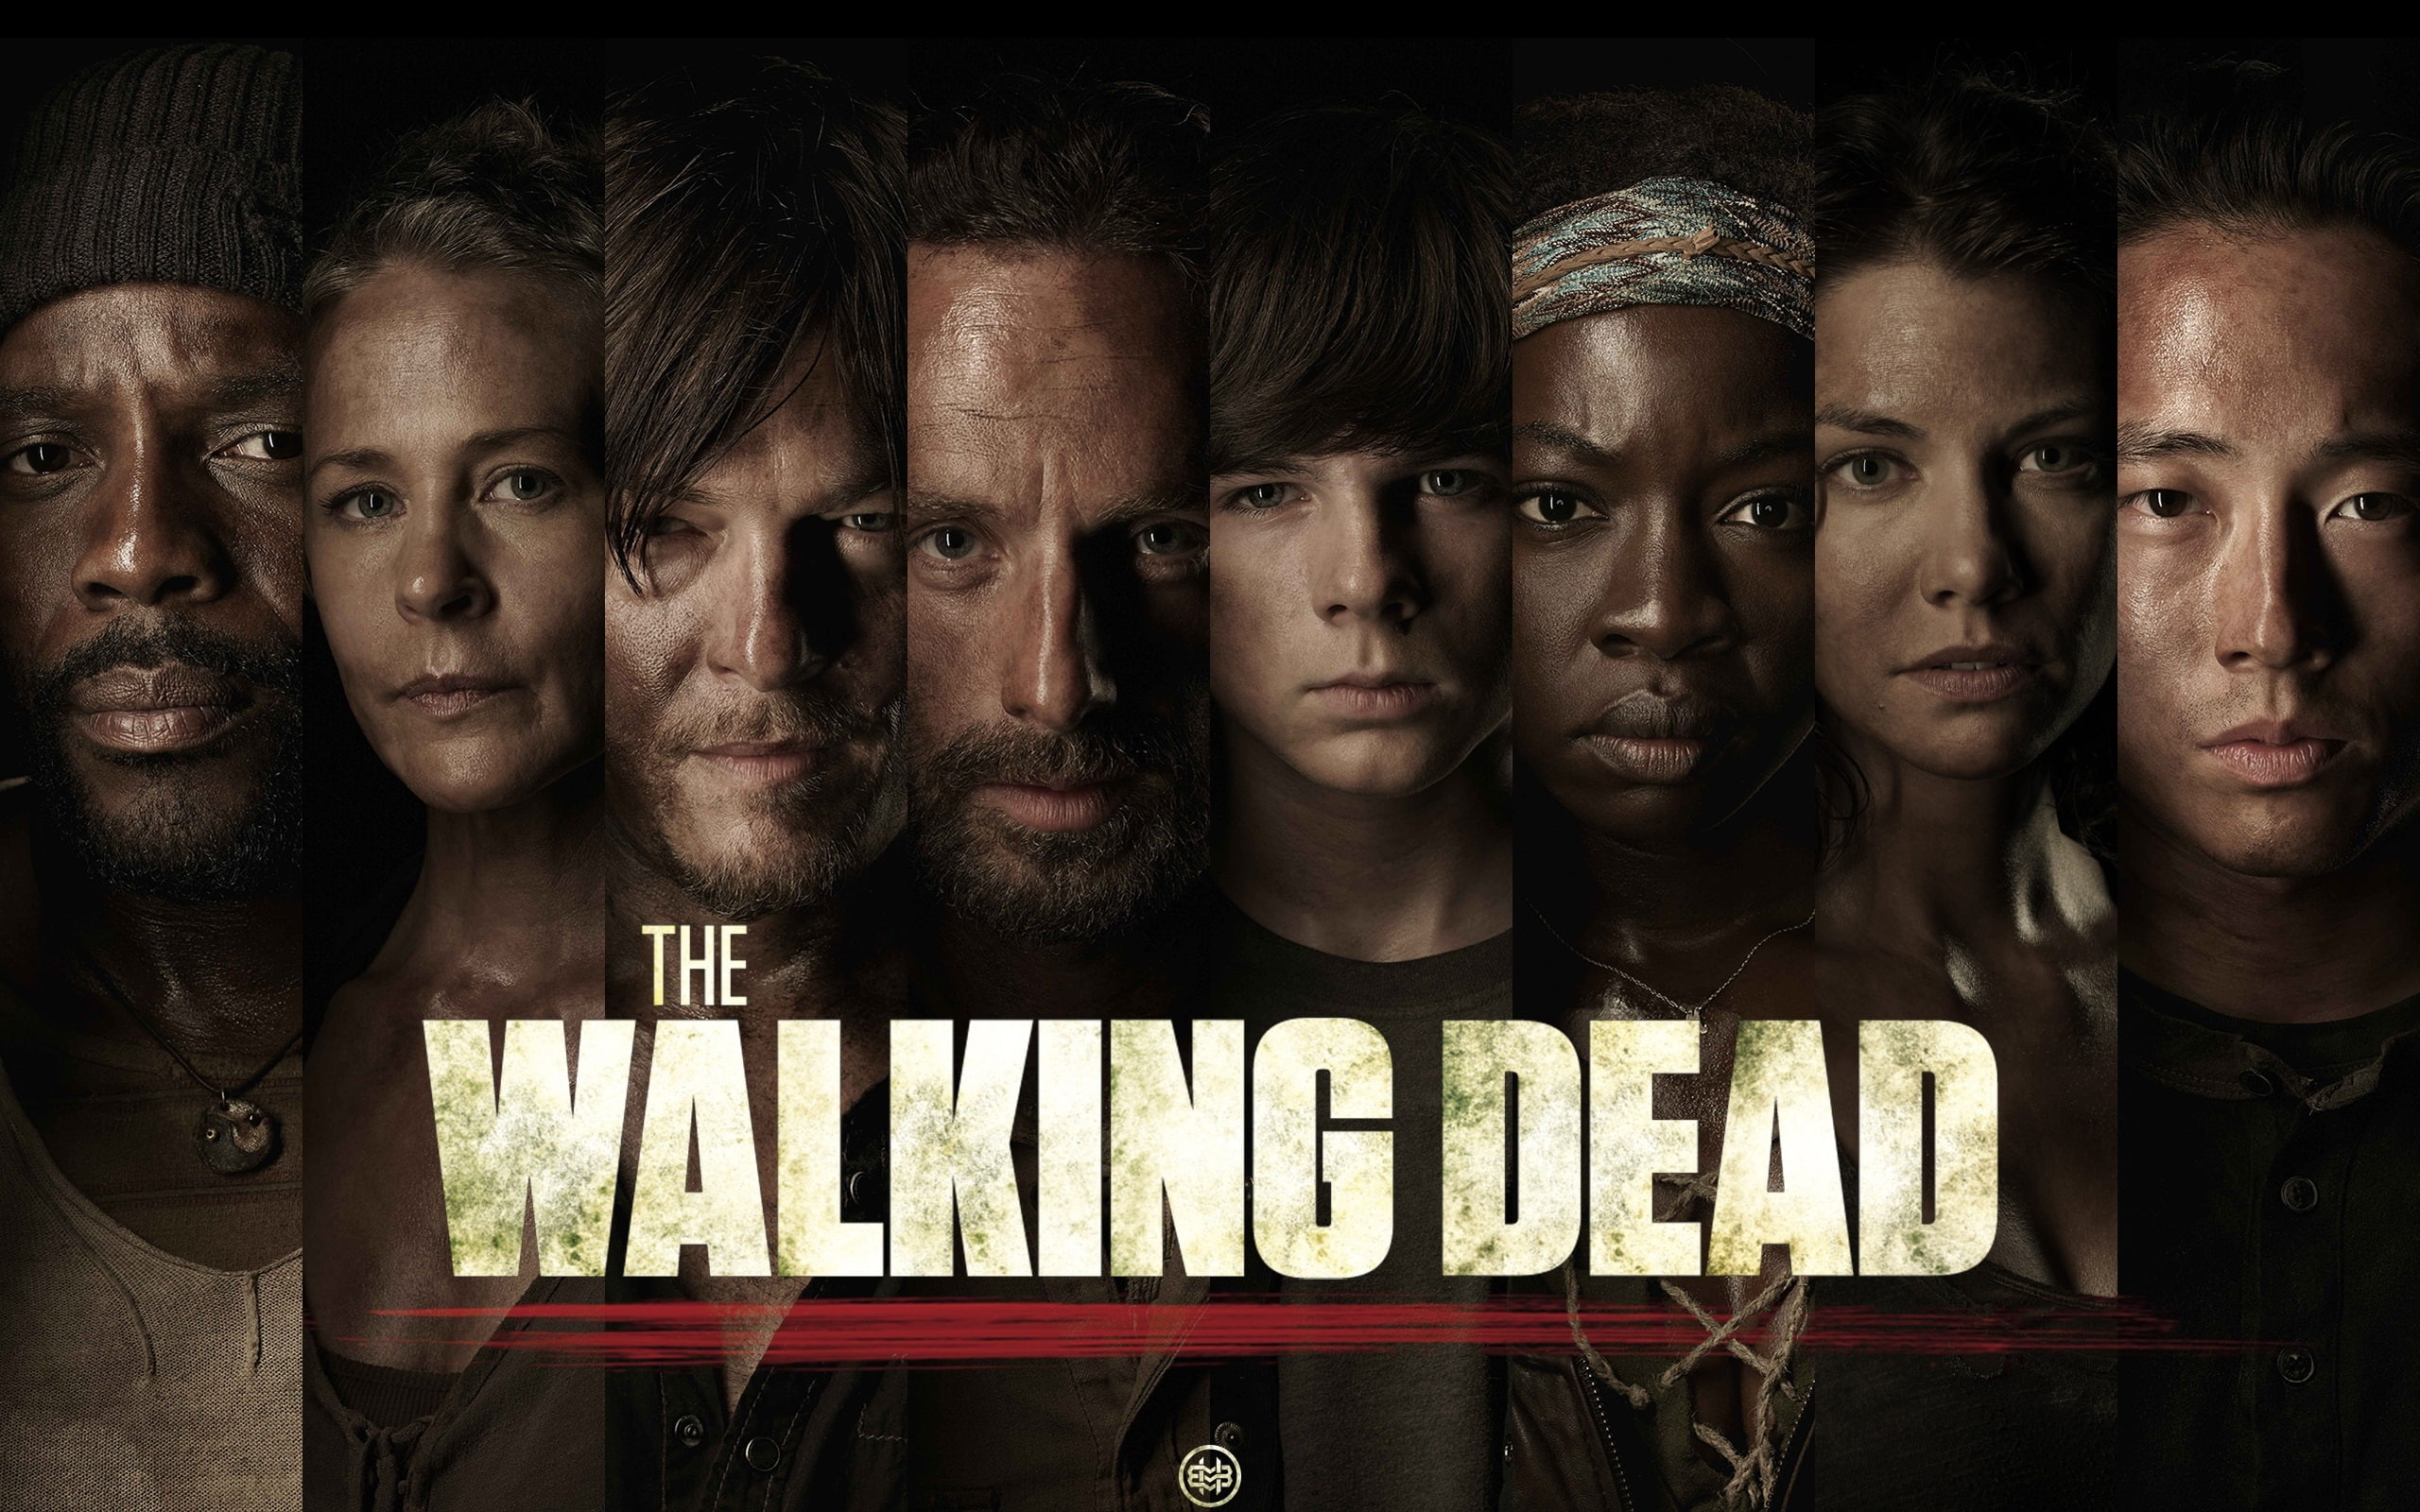 The Walking Dead, TV series